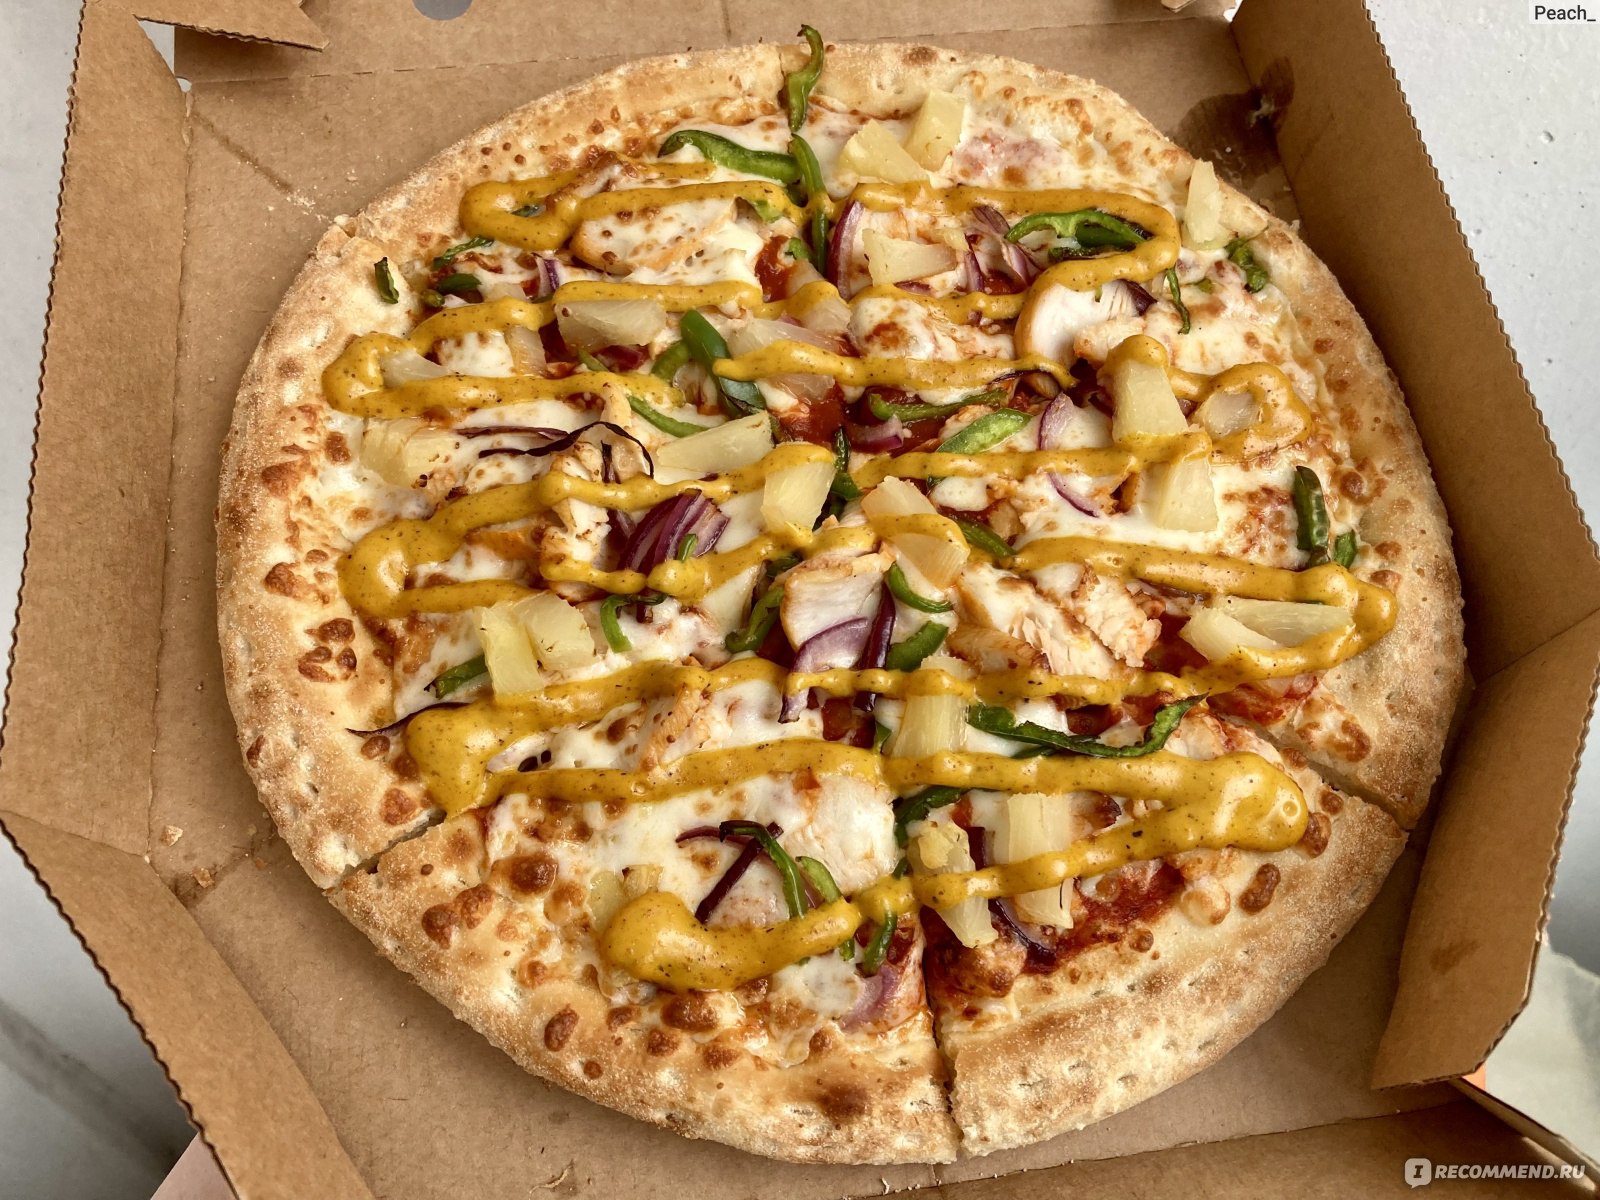 сколько калорий в одном куске пиццы додо пепперони фото 66